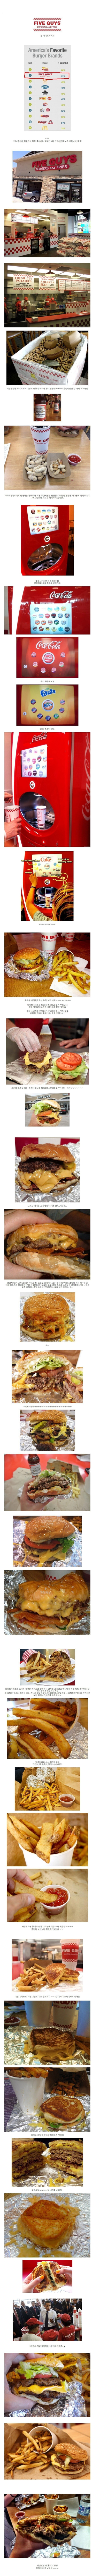 다음주 한국에 오픈한다는 미국 햄버거 브랜드